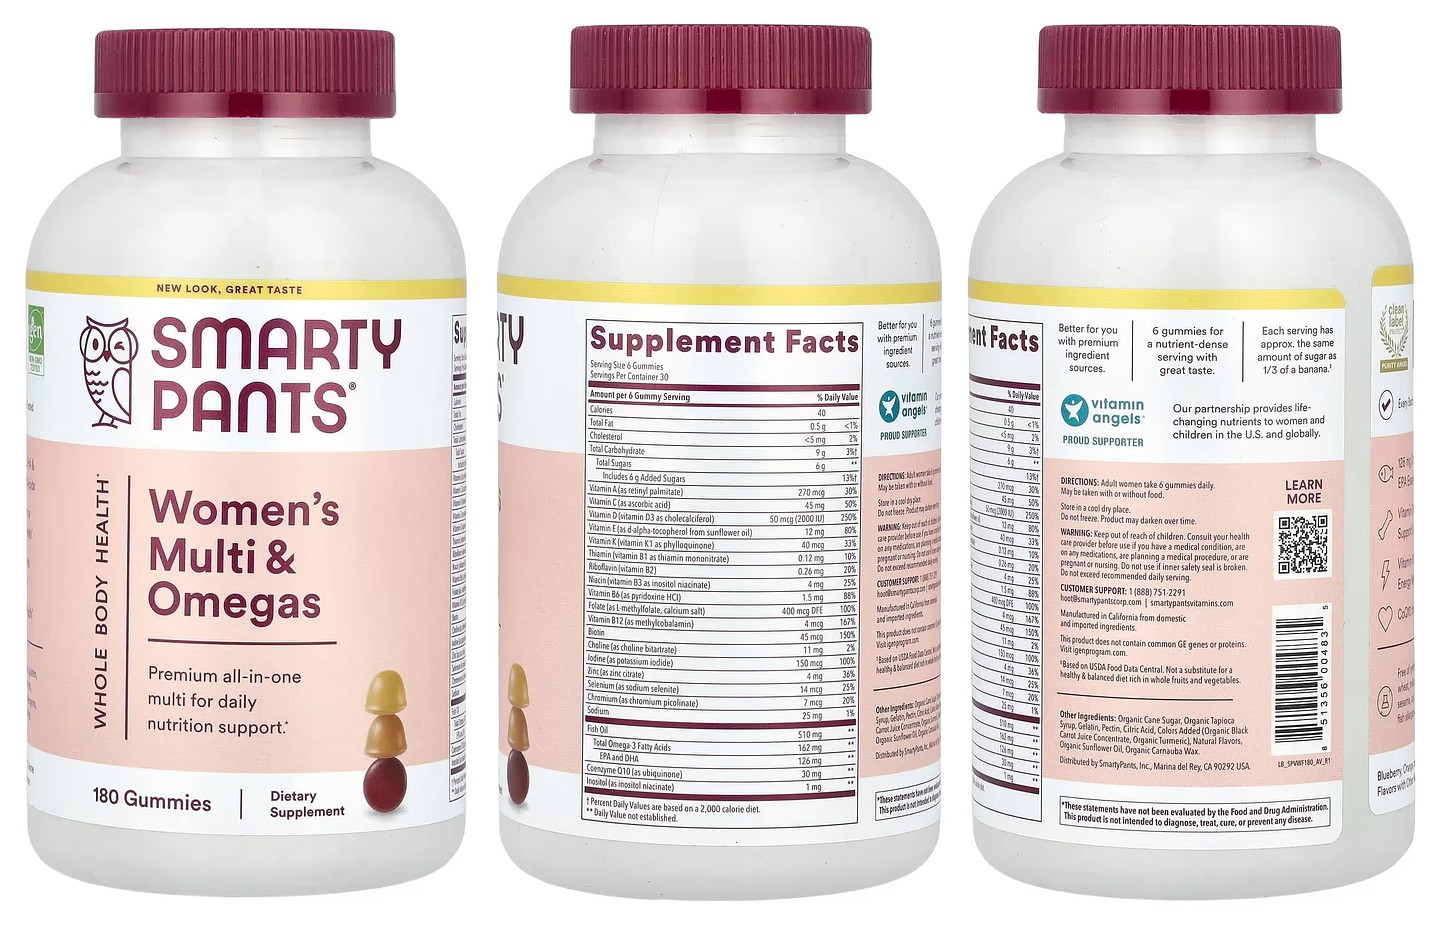 SmartyPants, Women's Multi & Omegas Gummies packaging